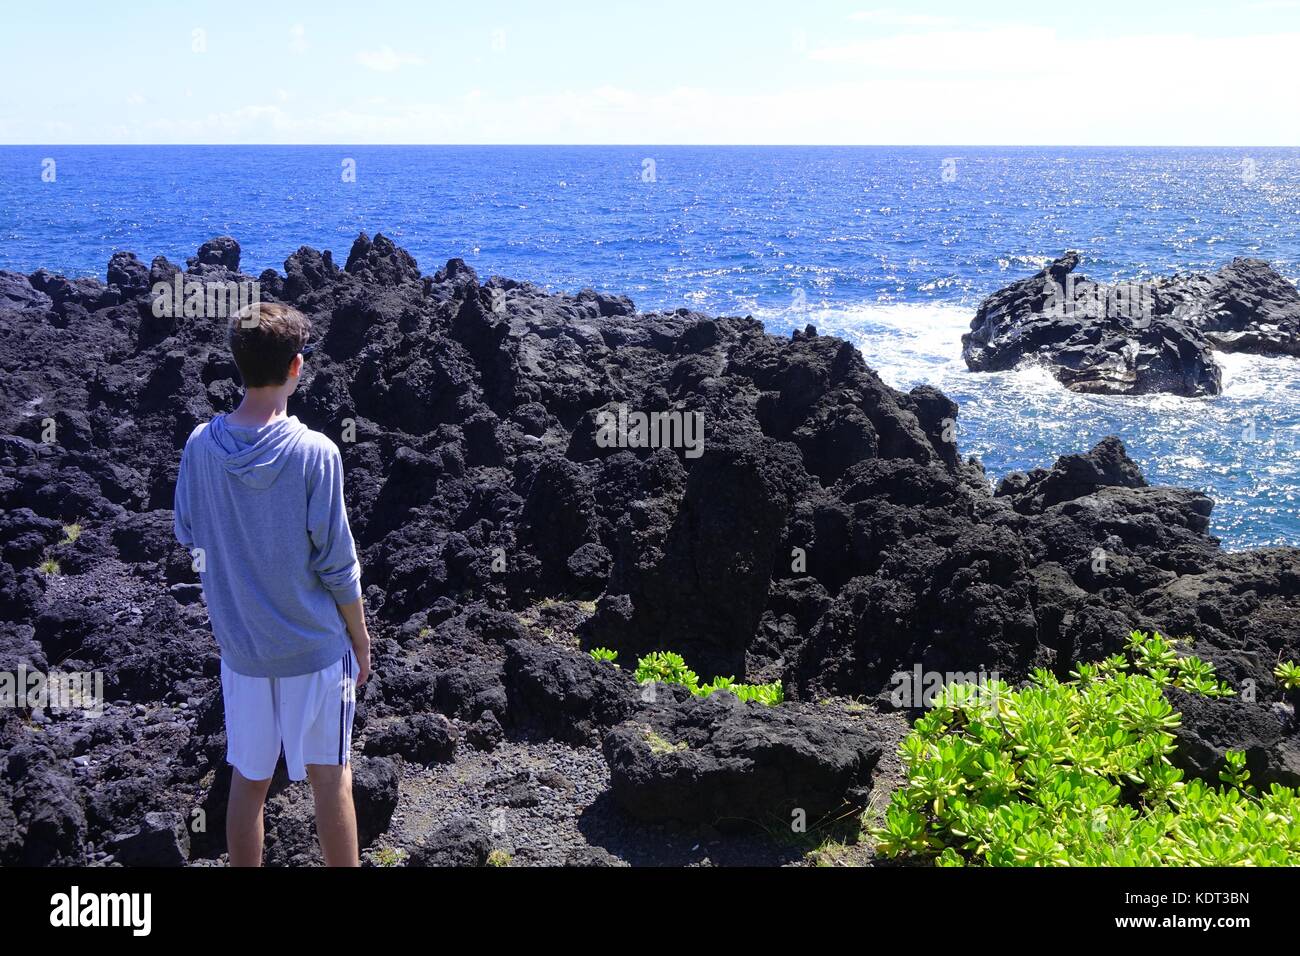 Young man gazes at waves crashing into lava rocks at Waianapanapa State Park, off the Hana Highway, Maui, Hawaii Stock Photo